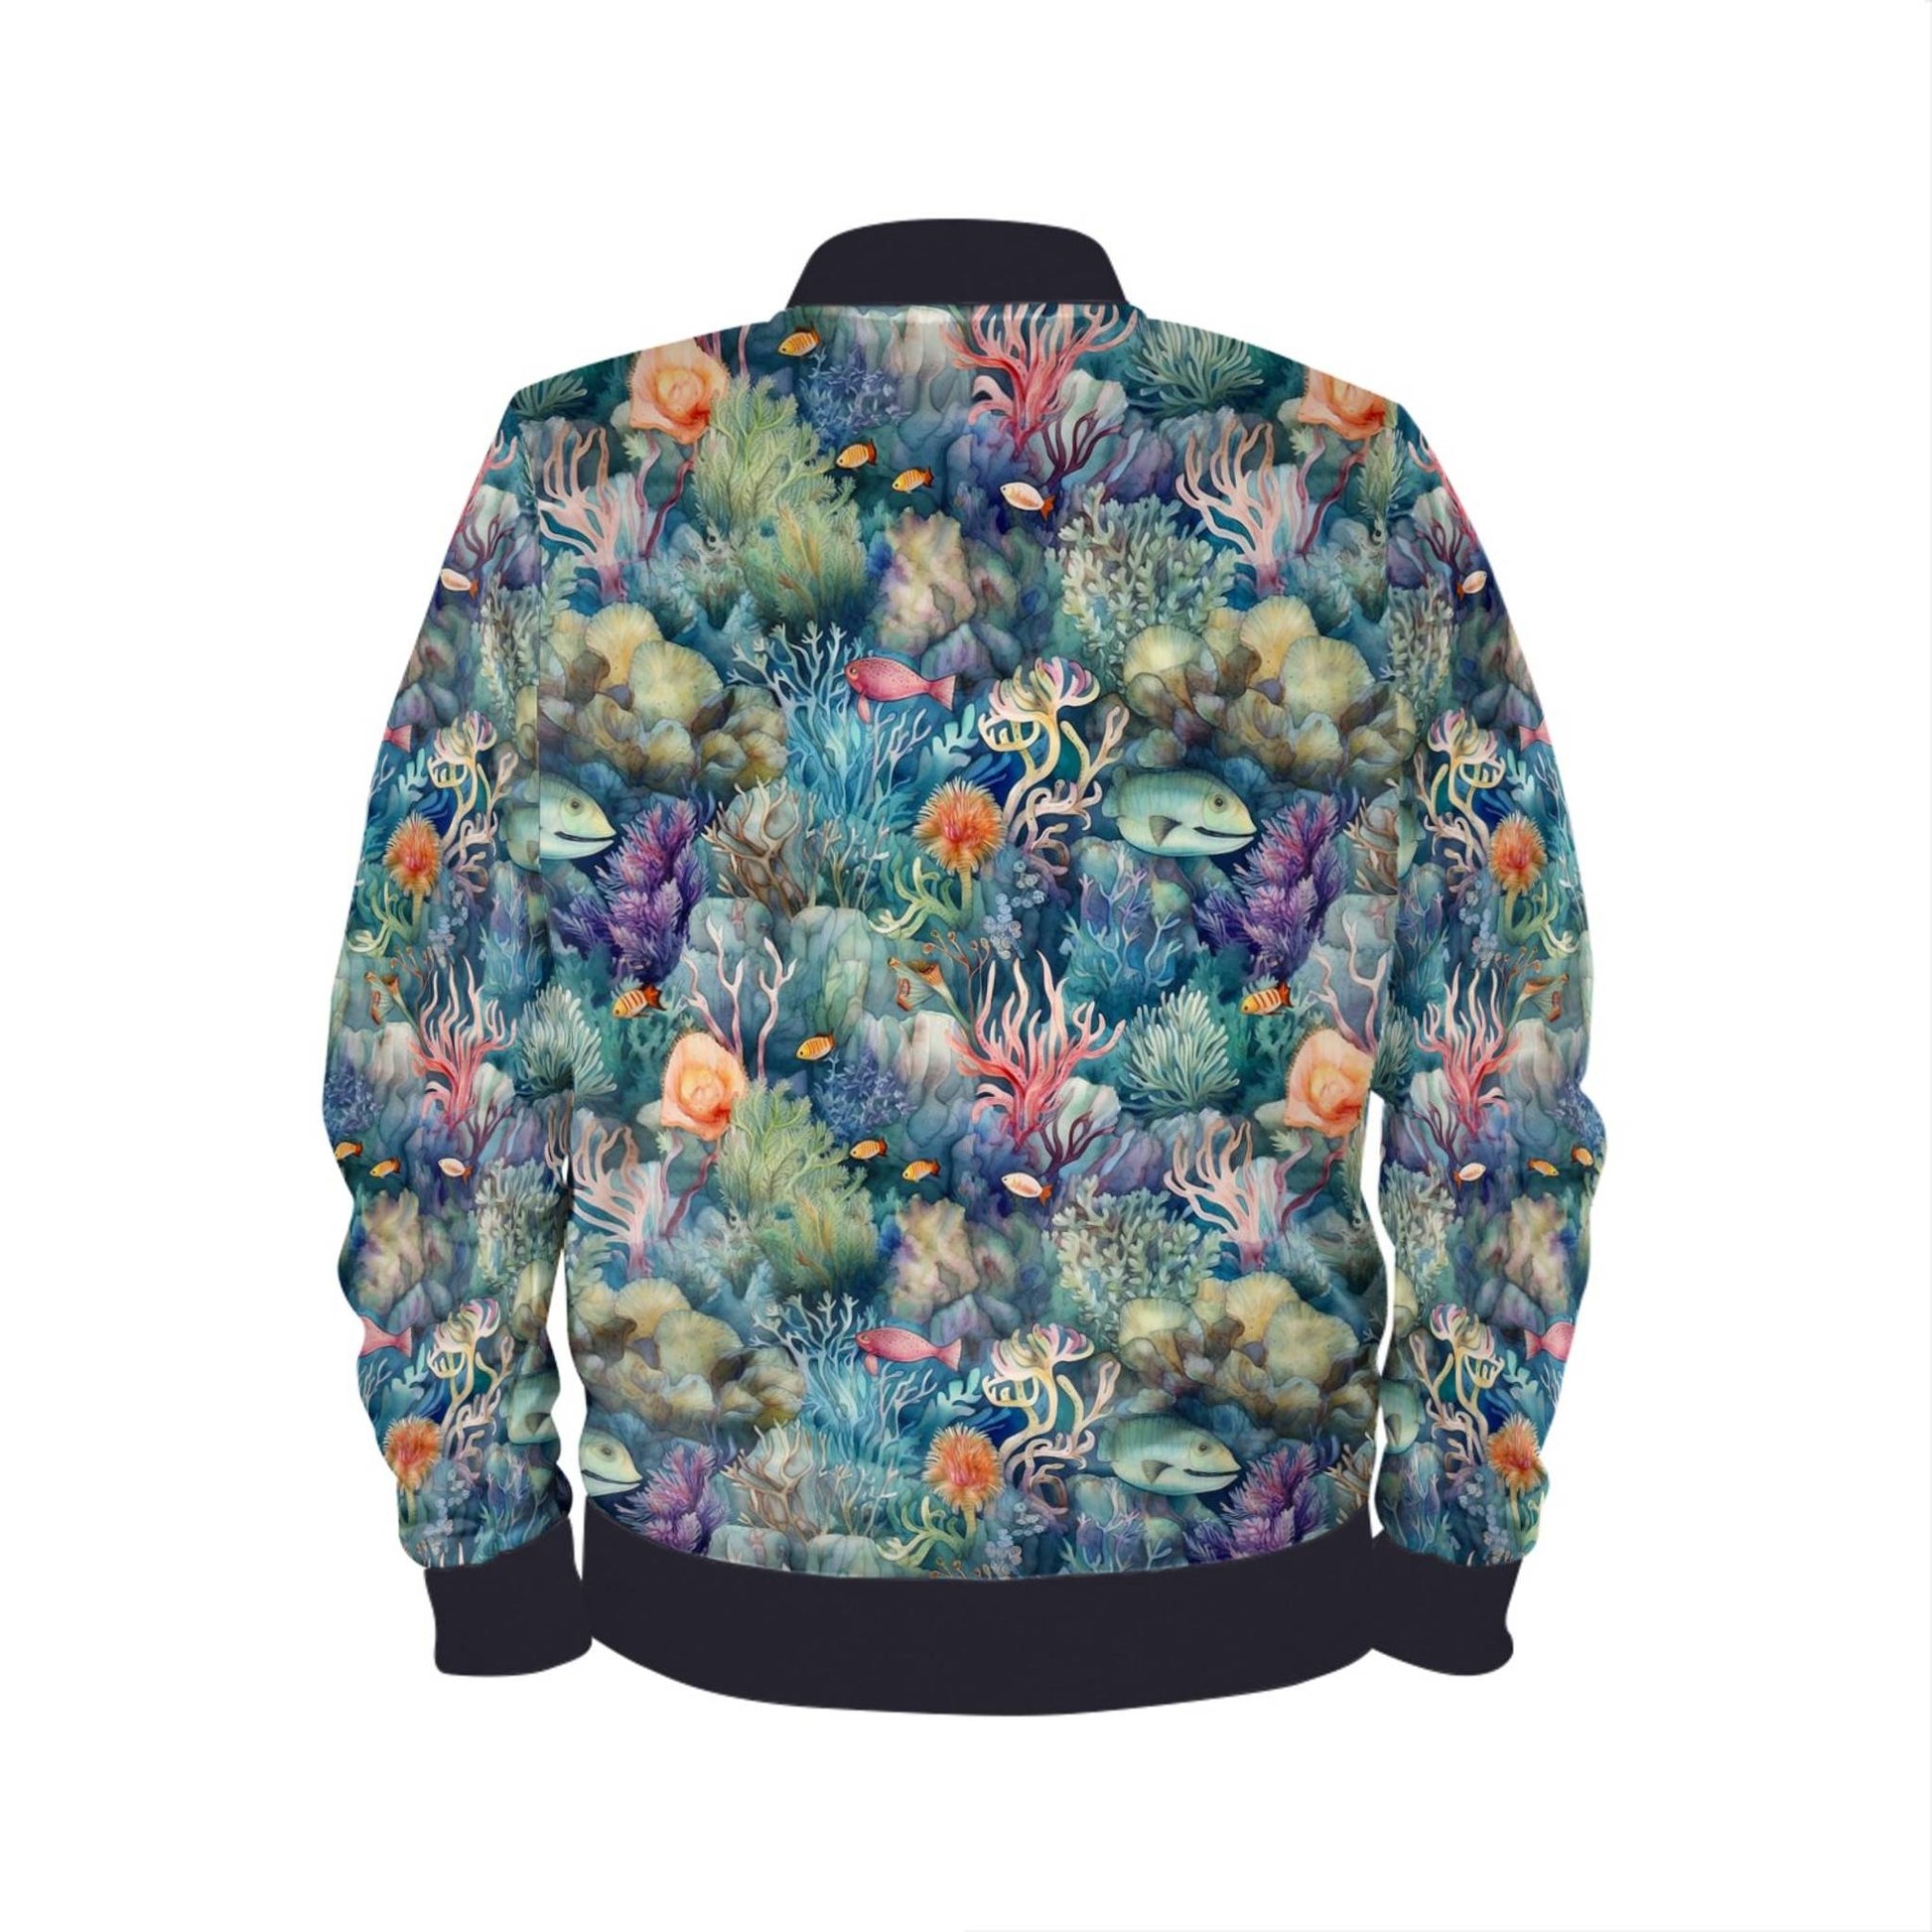 Watercolor Reef Womens Bomber Jacket by Studio Ten Design